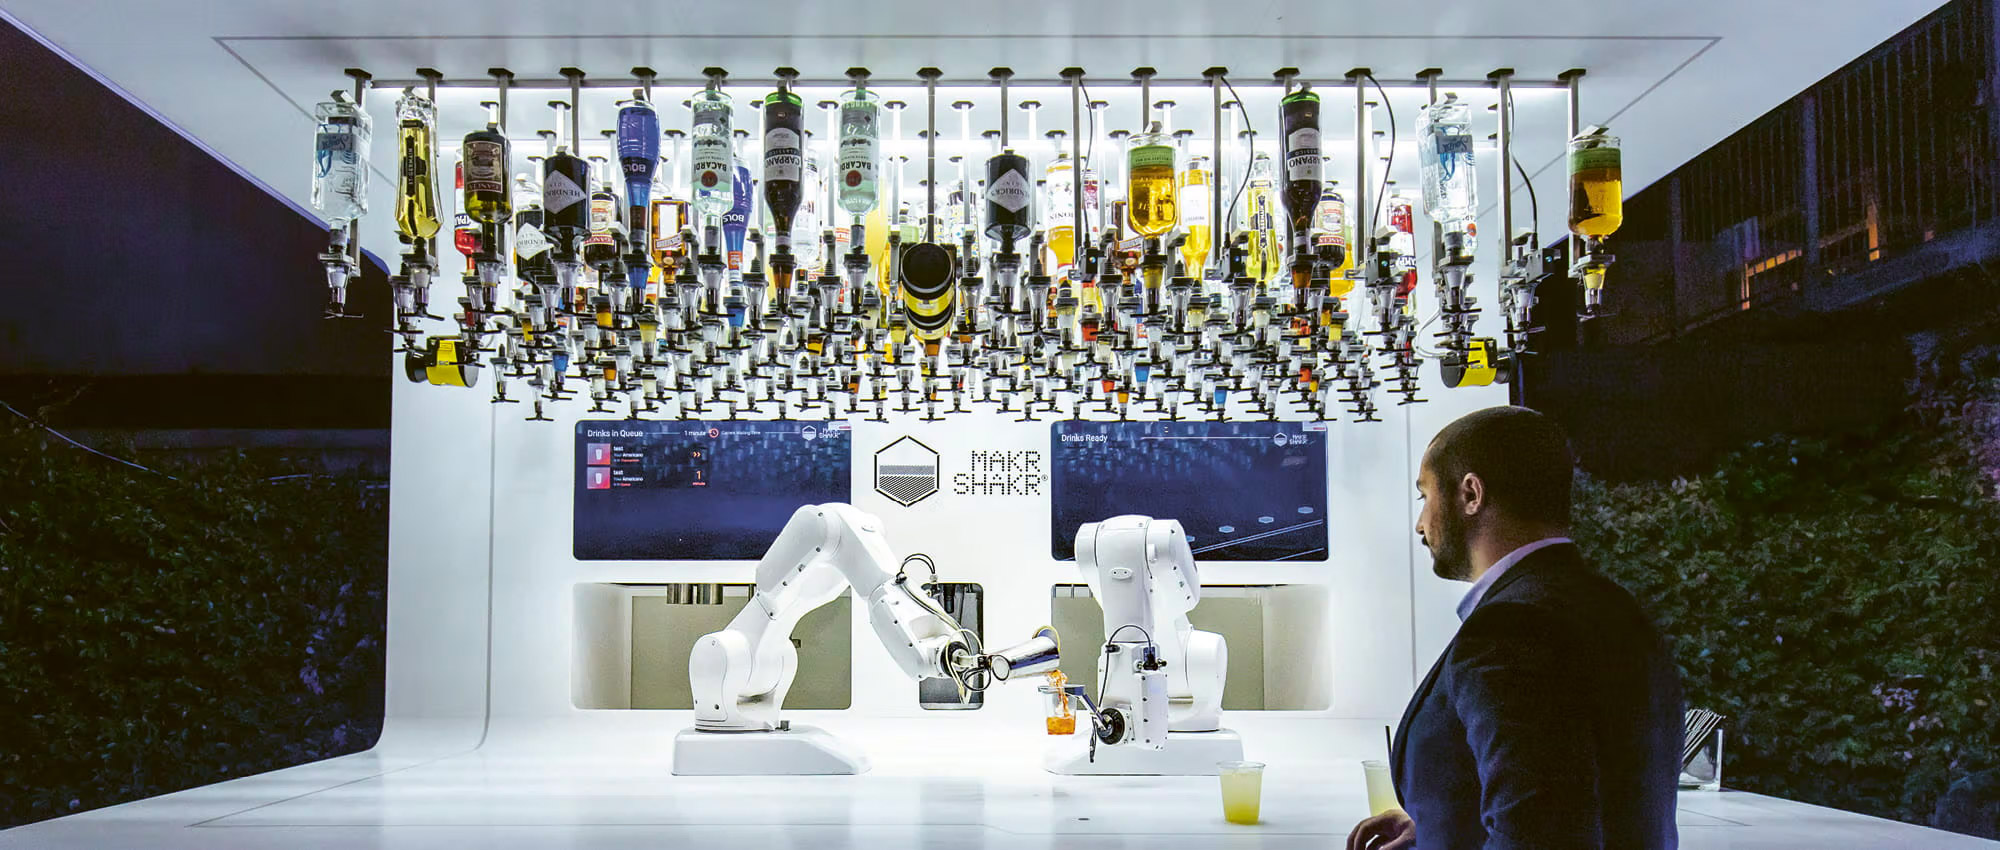 Ein Mann steht mit einem Cocktailbecher vor einem Kasten in dem zwei Roboterarme einen Cocktail mischen und mehreren verschiedenen Alkoholflaschen an der Decke. Copyright: KUKA Group